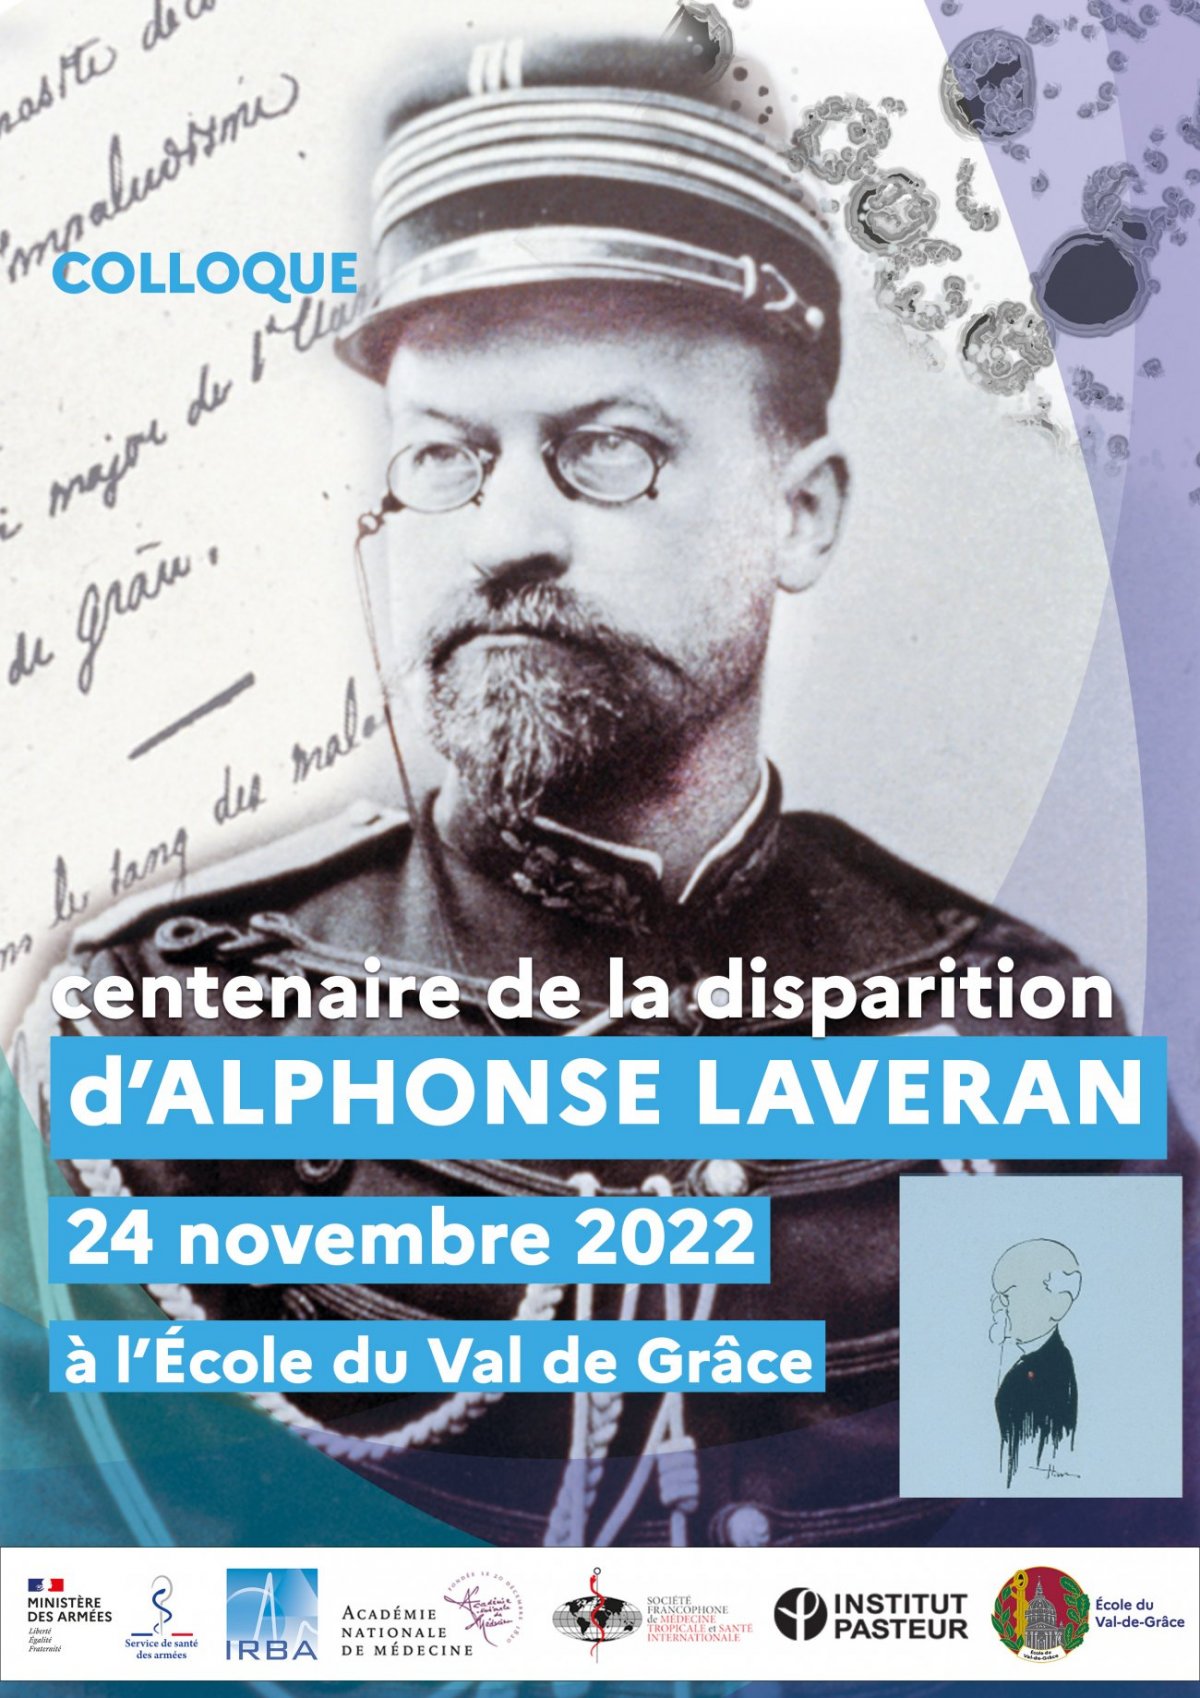 Colloquium for the centenary of Alphonse Laveran's death | Institut Pasteur